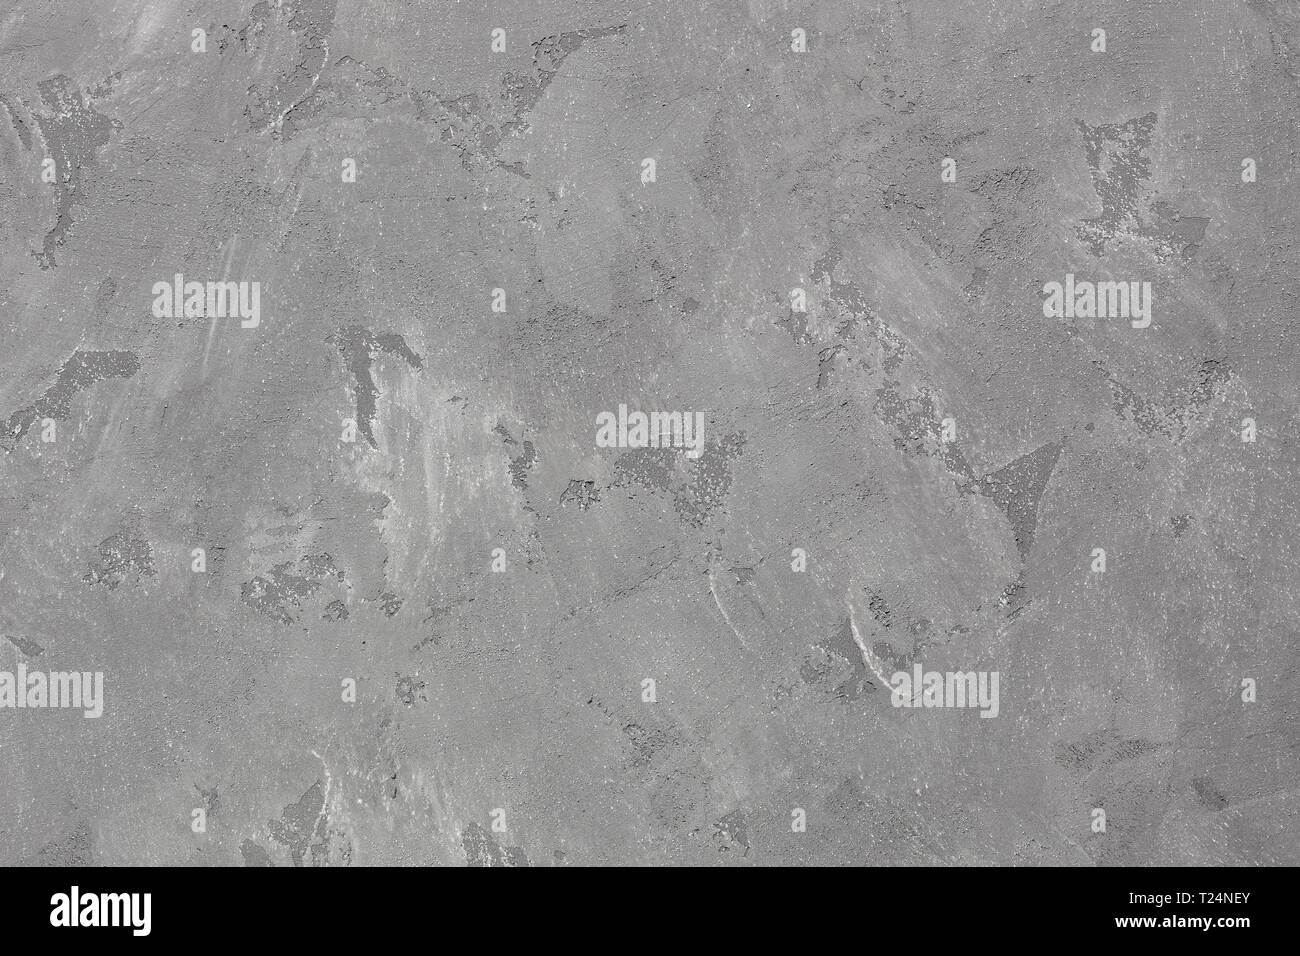 Szare tło - szary beton, miejsce na tekst, tło artykułu, abstrakcja, strukturalne podłoże, zimne szare kolory Stock Photo